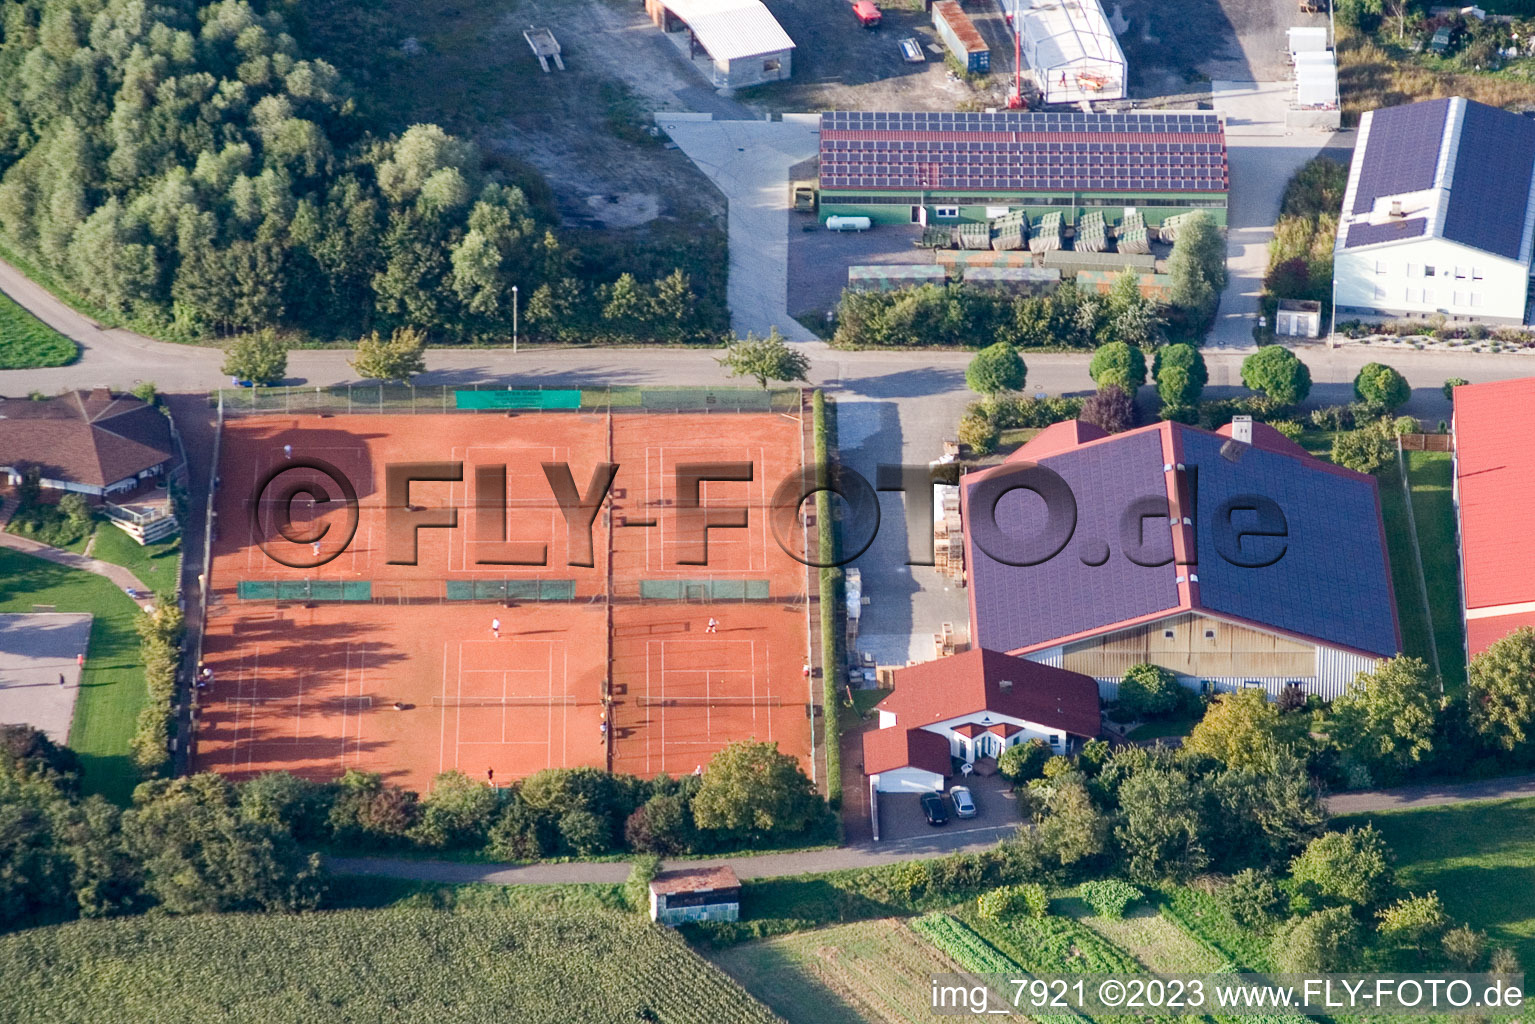 Vue aérienne de Club de tennis à Neuburg dans le département Rhénanie-Palatinat, Allemagne